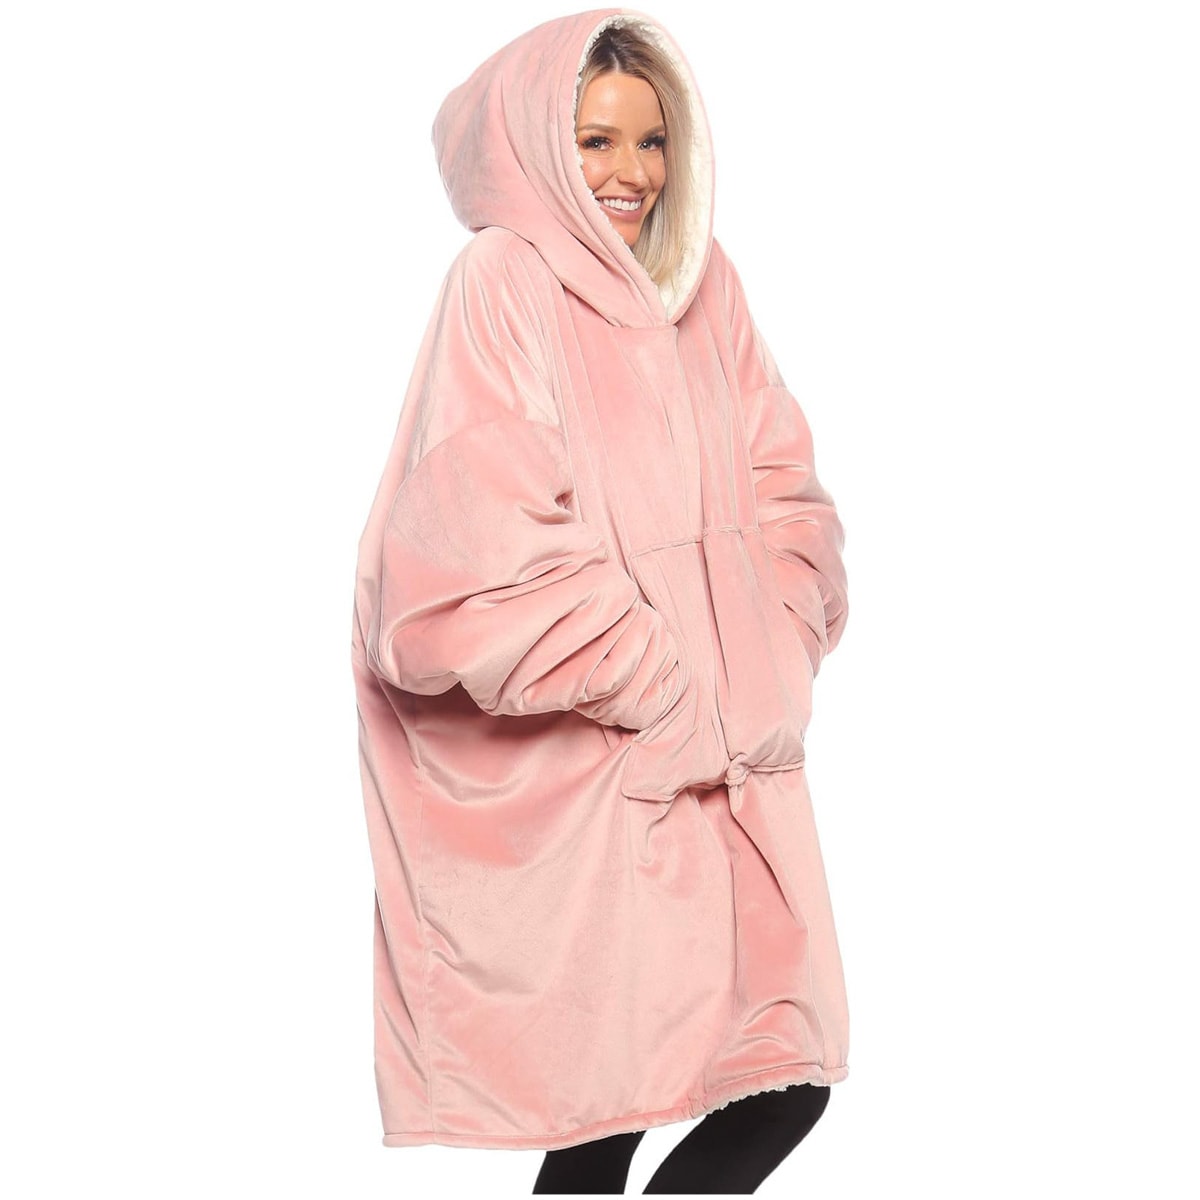 Woman wearing a pink wearable blanket.